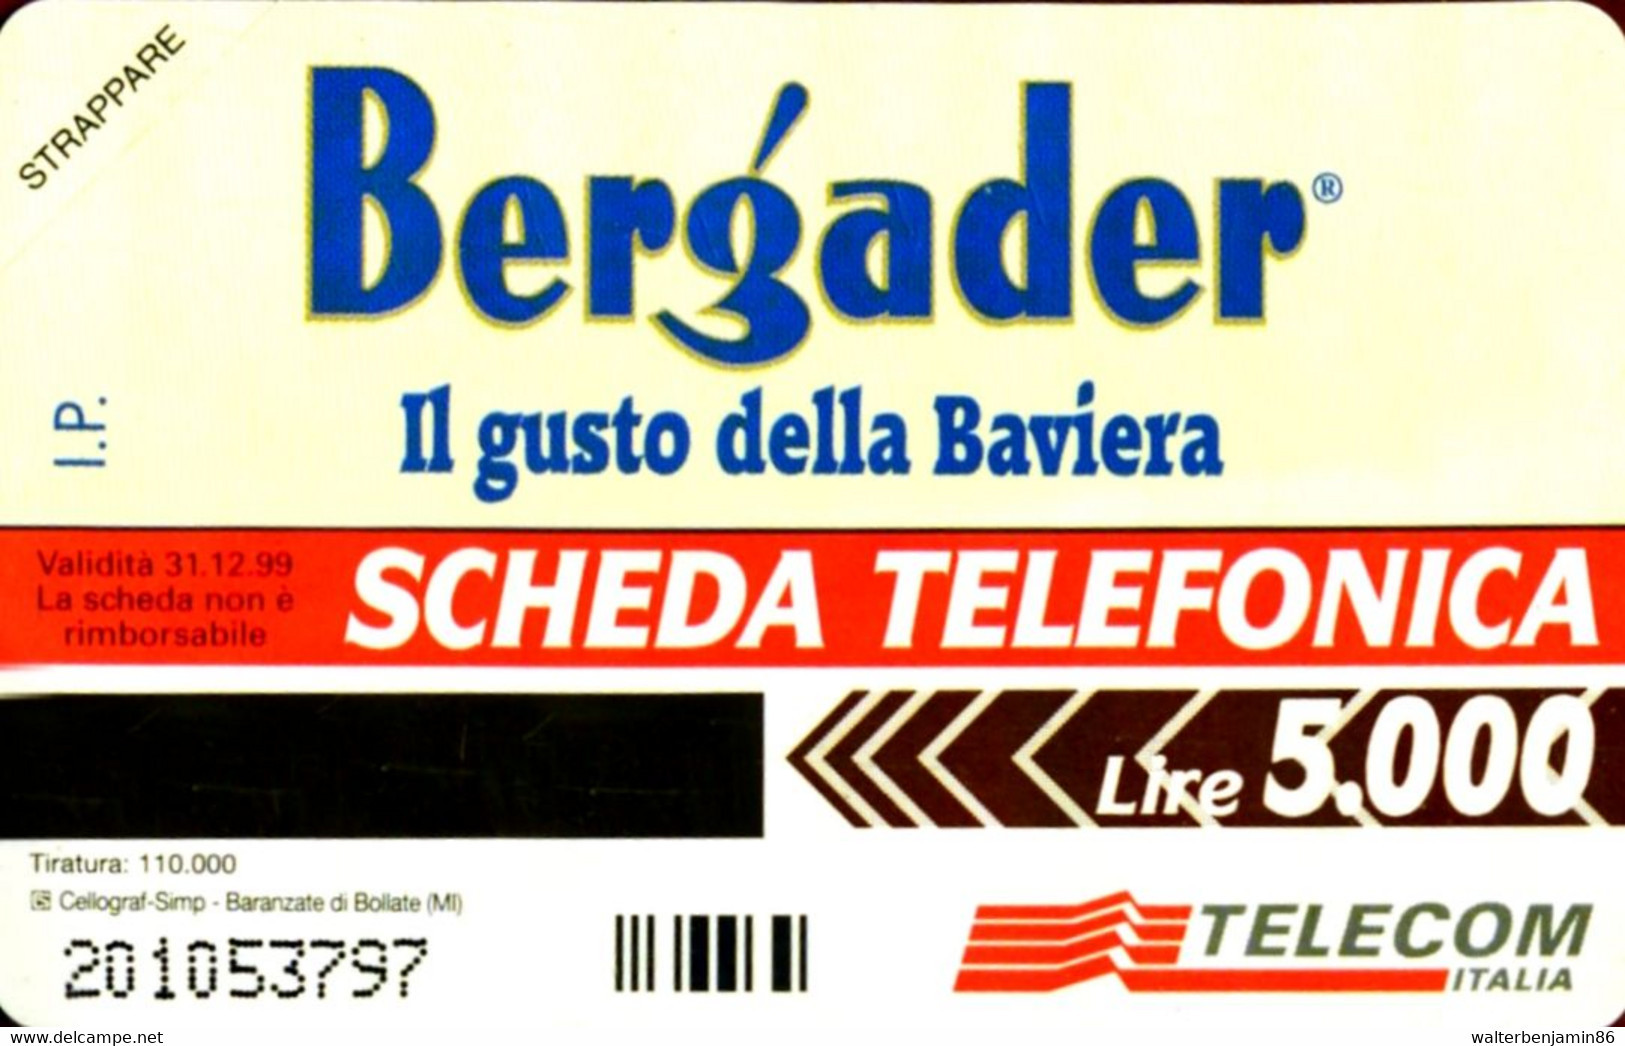 G 691 C&C 2759 SCHEDA TELEFONICA NUOVA MAGNETIZZATA BERGADER - Publiques Spéciales Ou Commémoratives